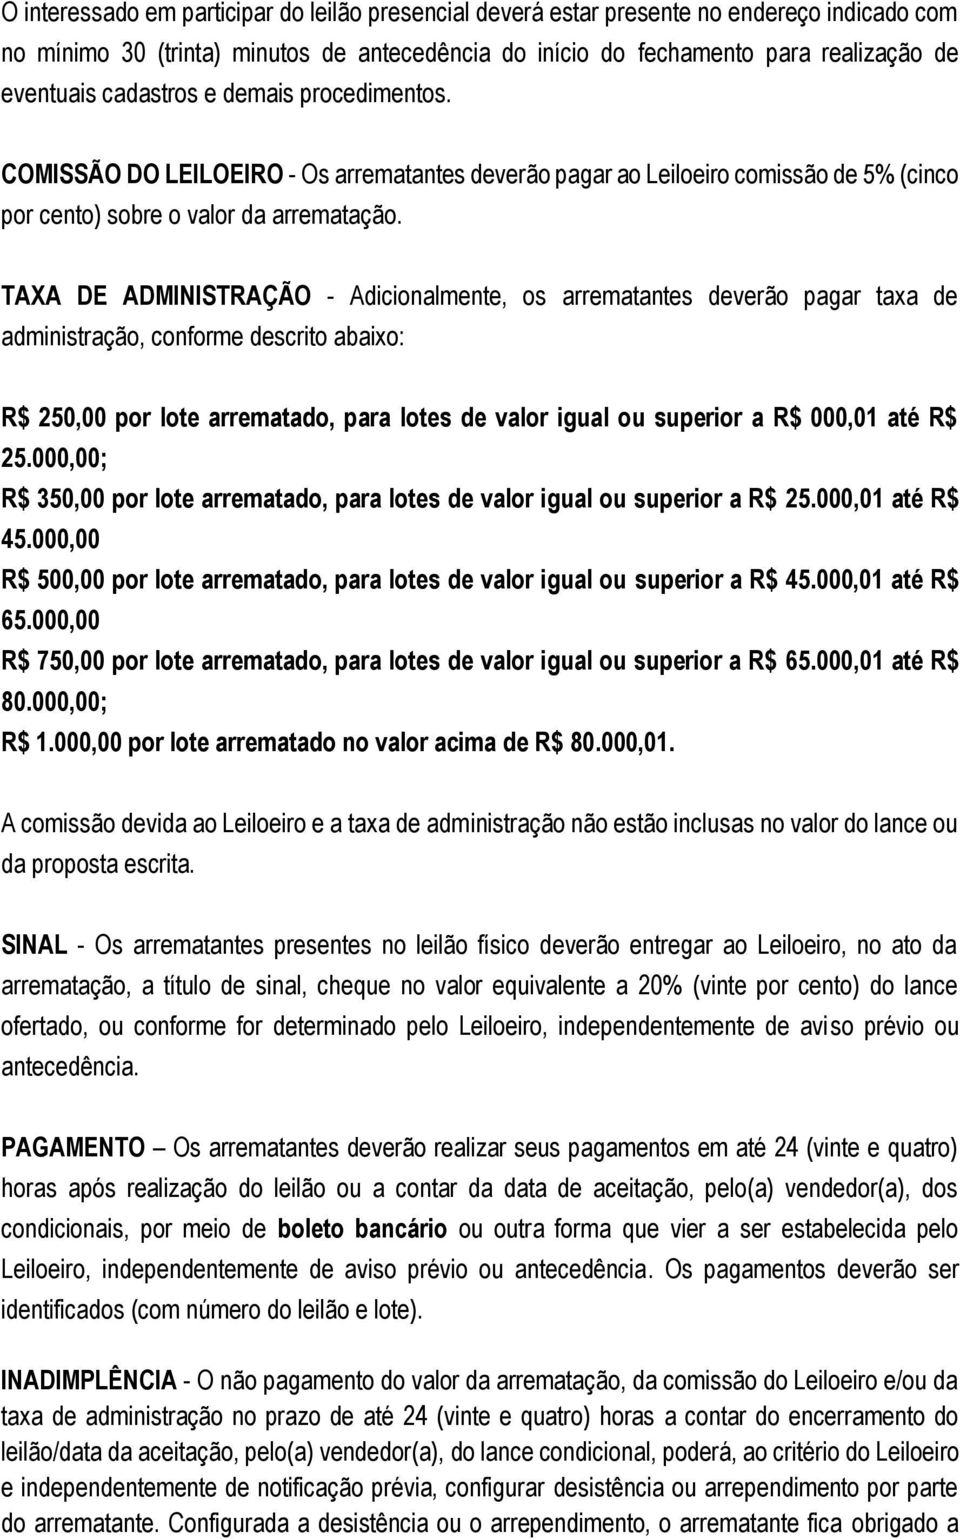 TAXA DE ADMINISTRAÇÃO - Adicionalmente, os arrematantes deverão pagar taxa de administração, conforme descrito abaixo: R$ 250,00 por lote arrematado, para lotes de valor igual ou superior a R$ 000,01